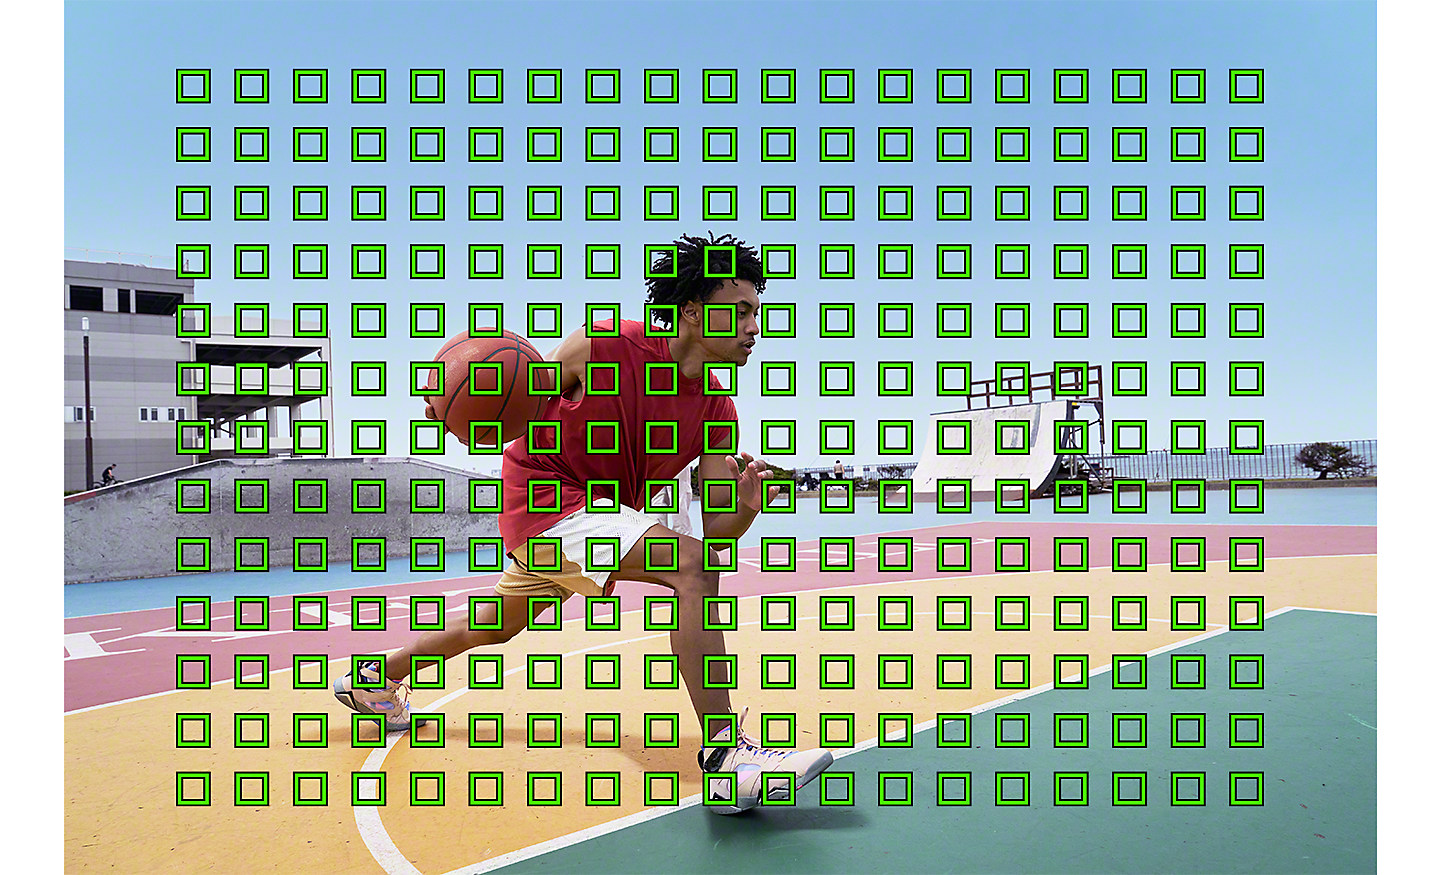 籃球運動員的影像，多個層疊的小型綠色正方形標示自動對焦覆蓋範圍